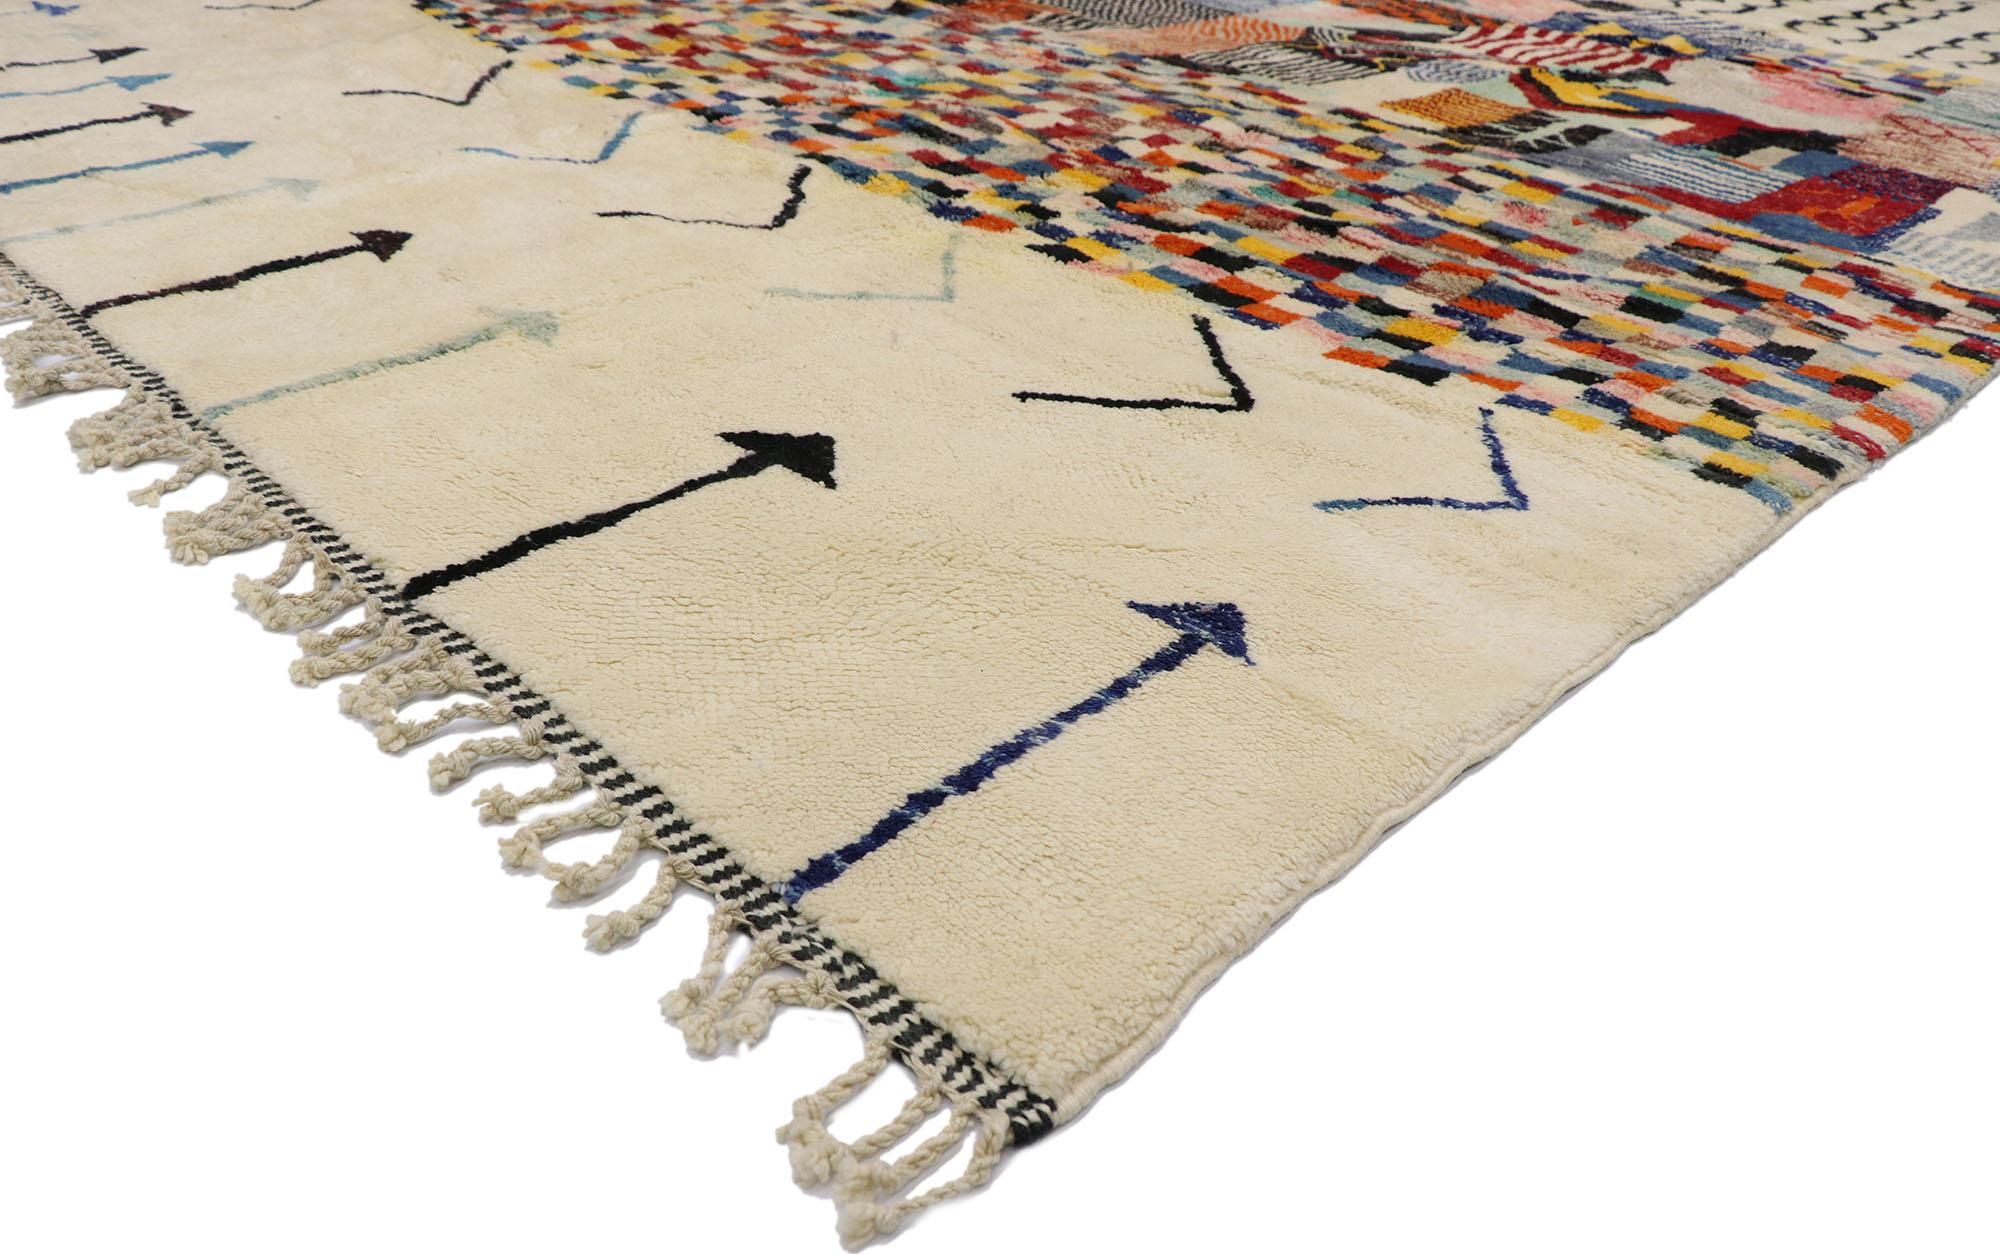 21180 nouveau tapis berbère marocain contemporain inspiré par Gunta Stölzl 09'05 x 12'07. Avec son design expressif et audacieux, ses détails et sa texture incroyables, ce tapis berbère marocain contemporain en laine nouée à la main est une vision